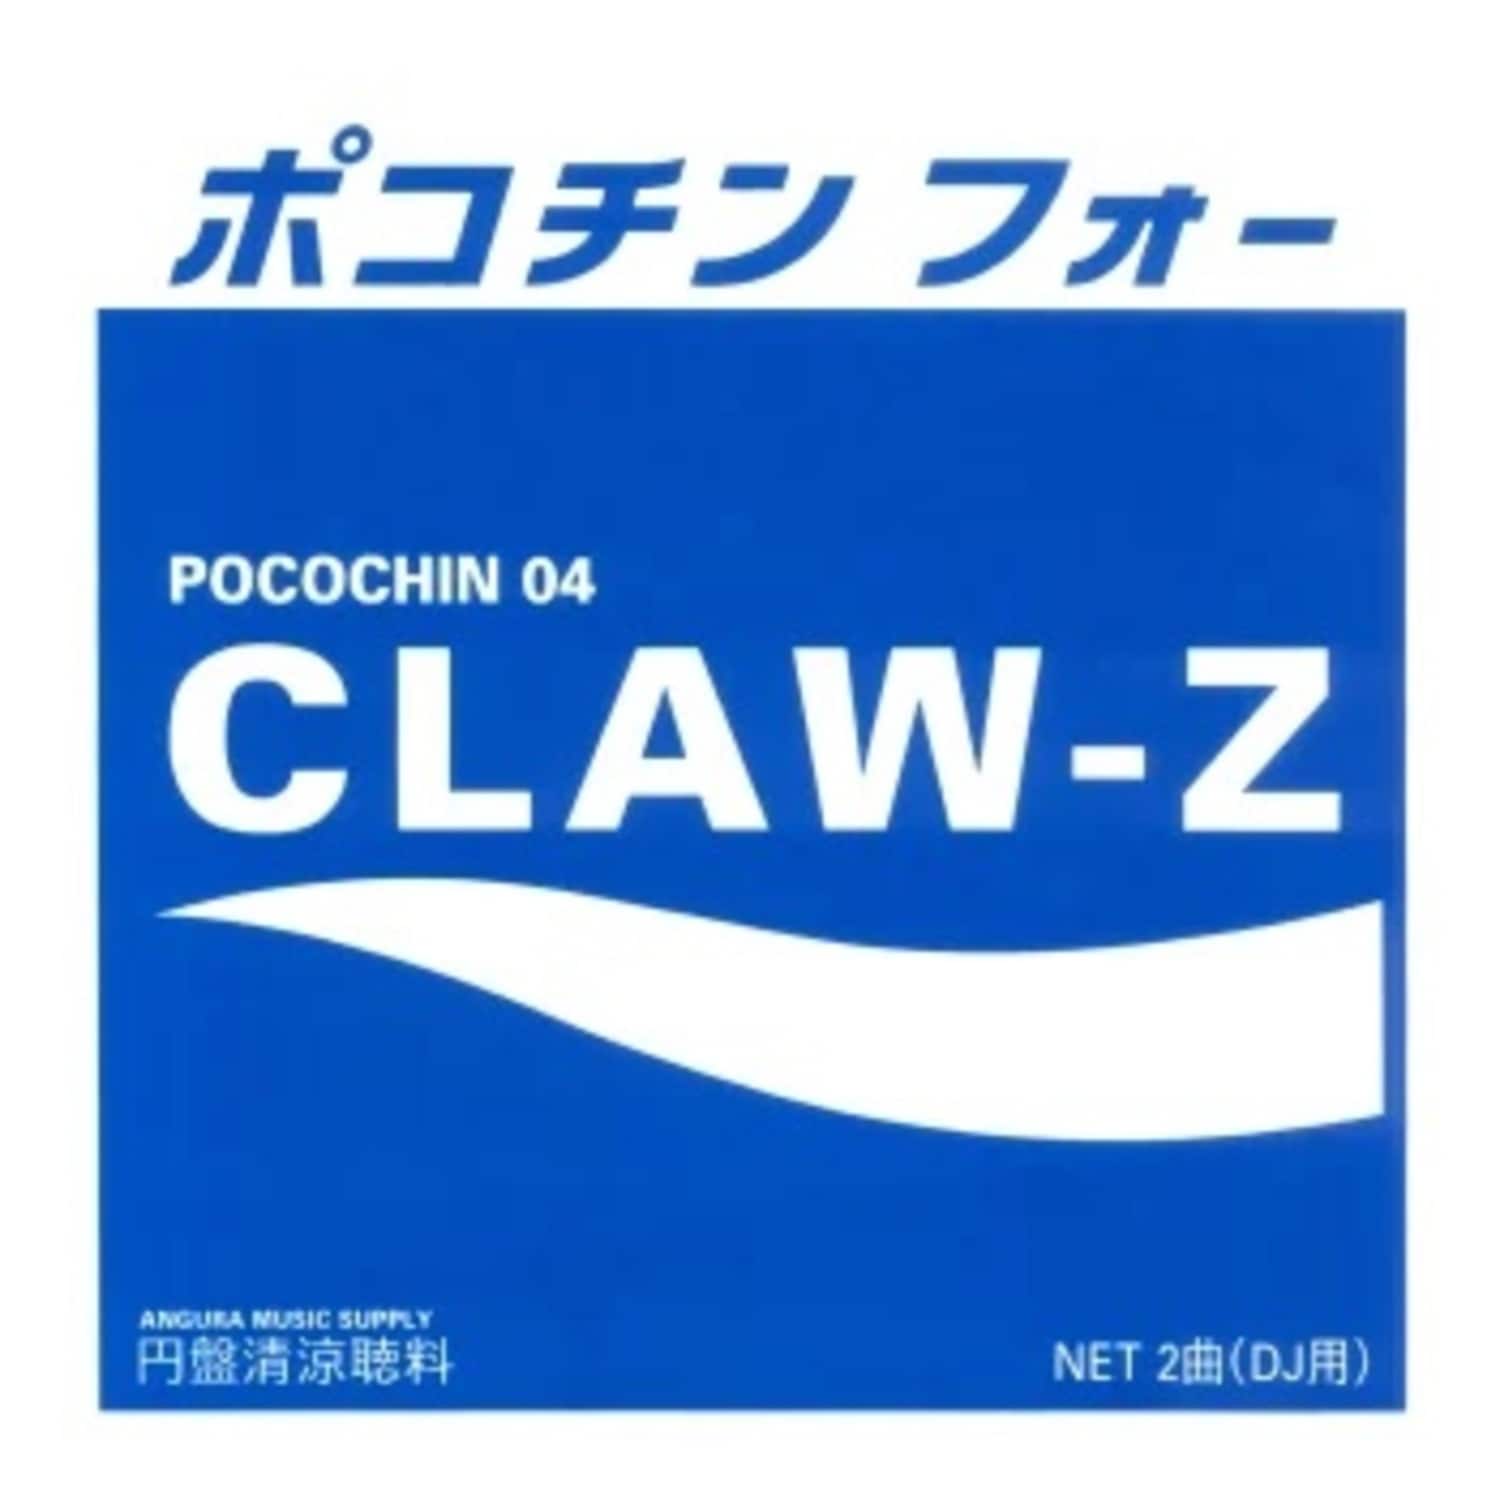 Claw-Z - POCOCHIN 04